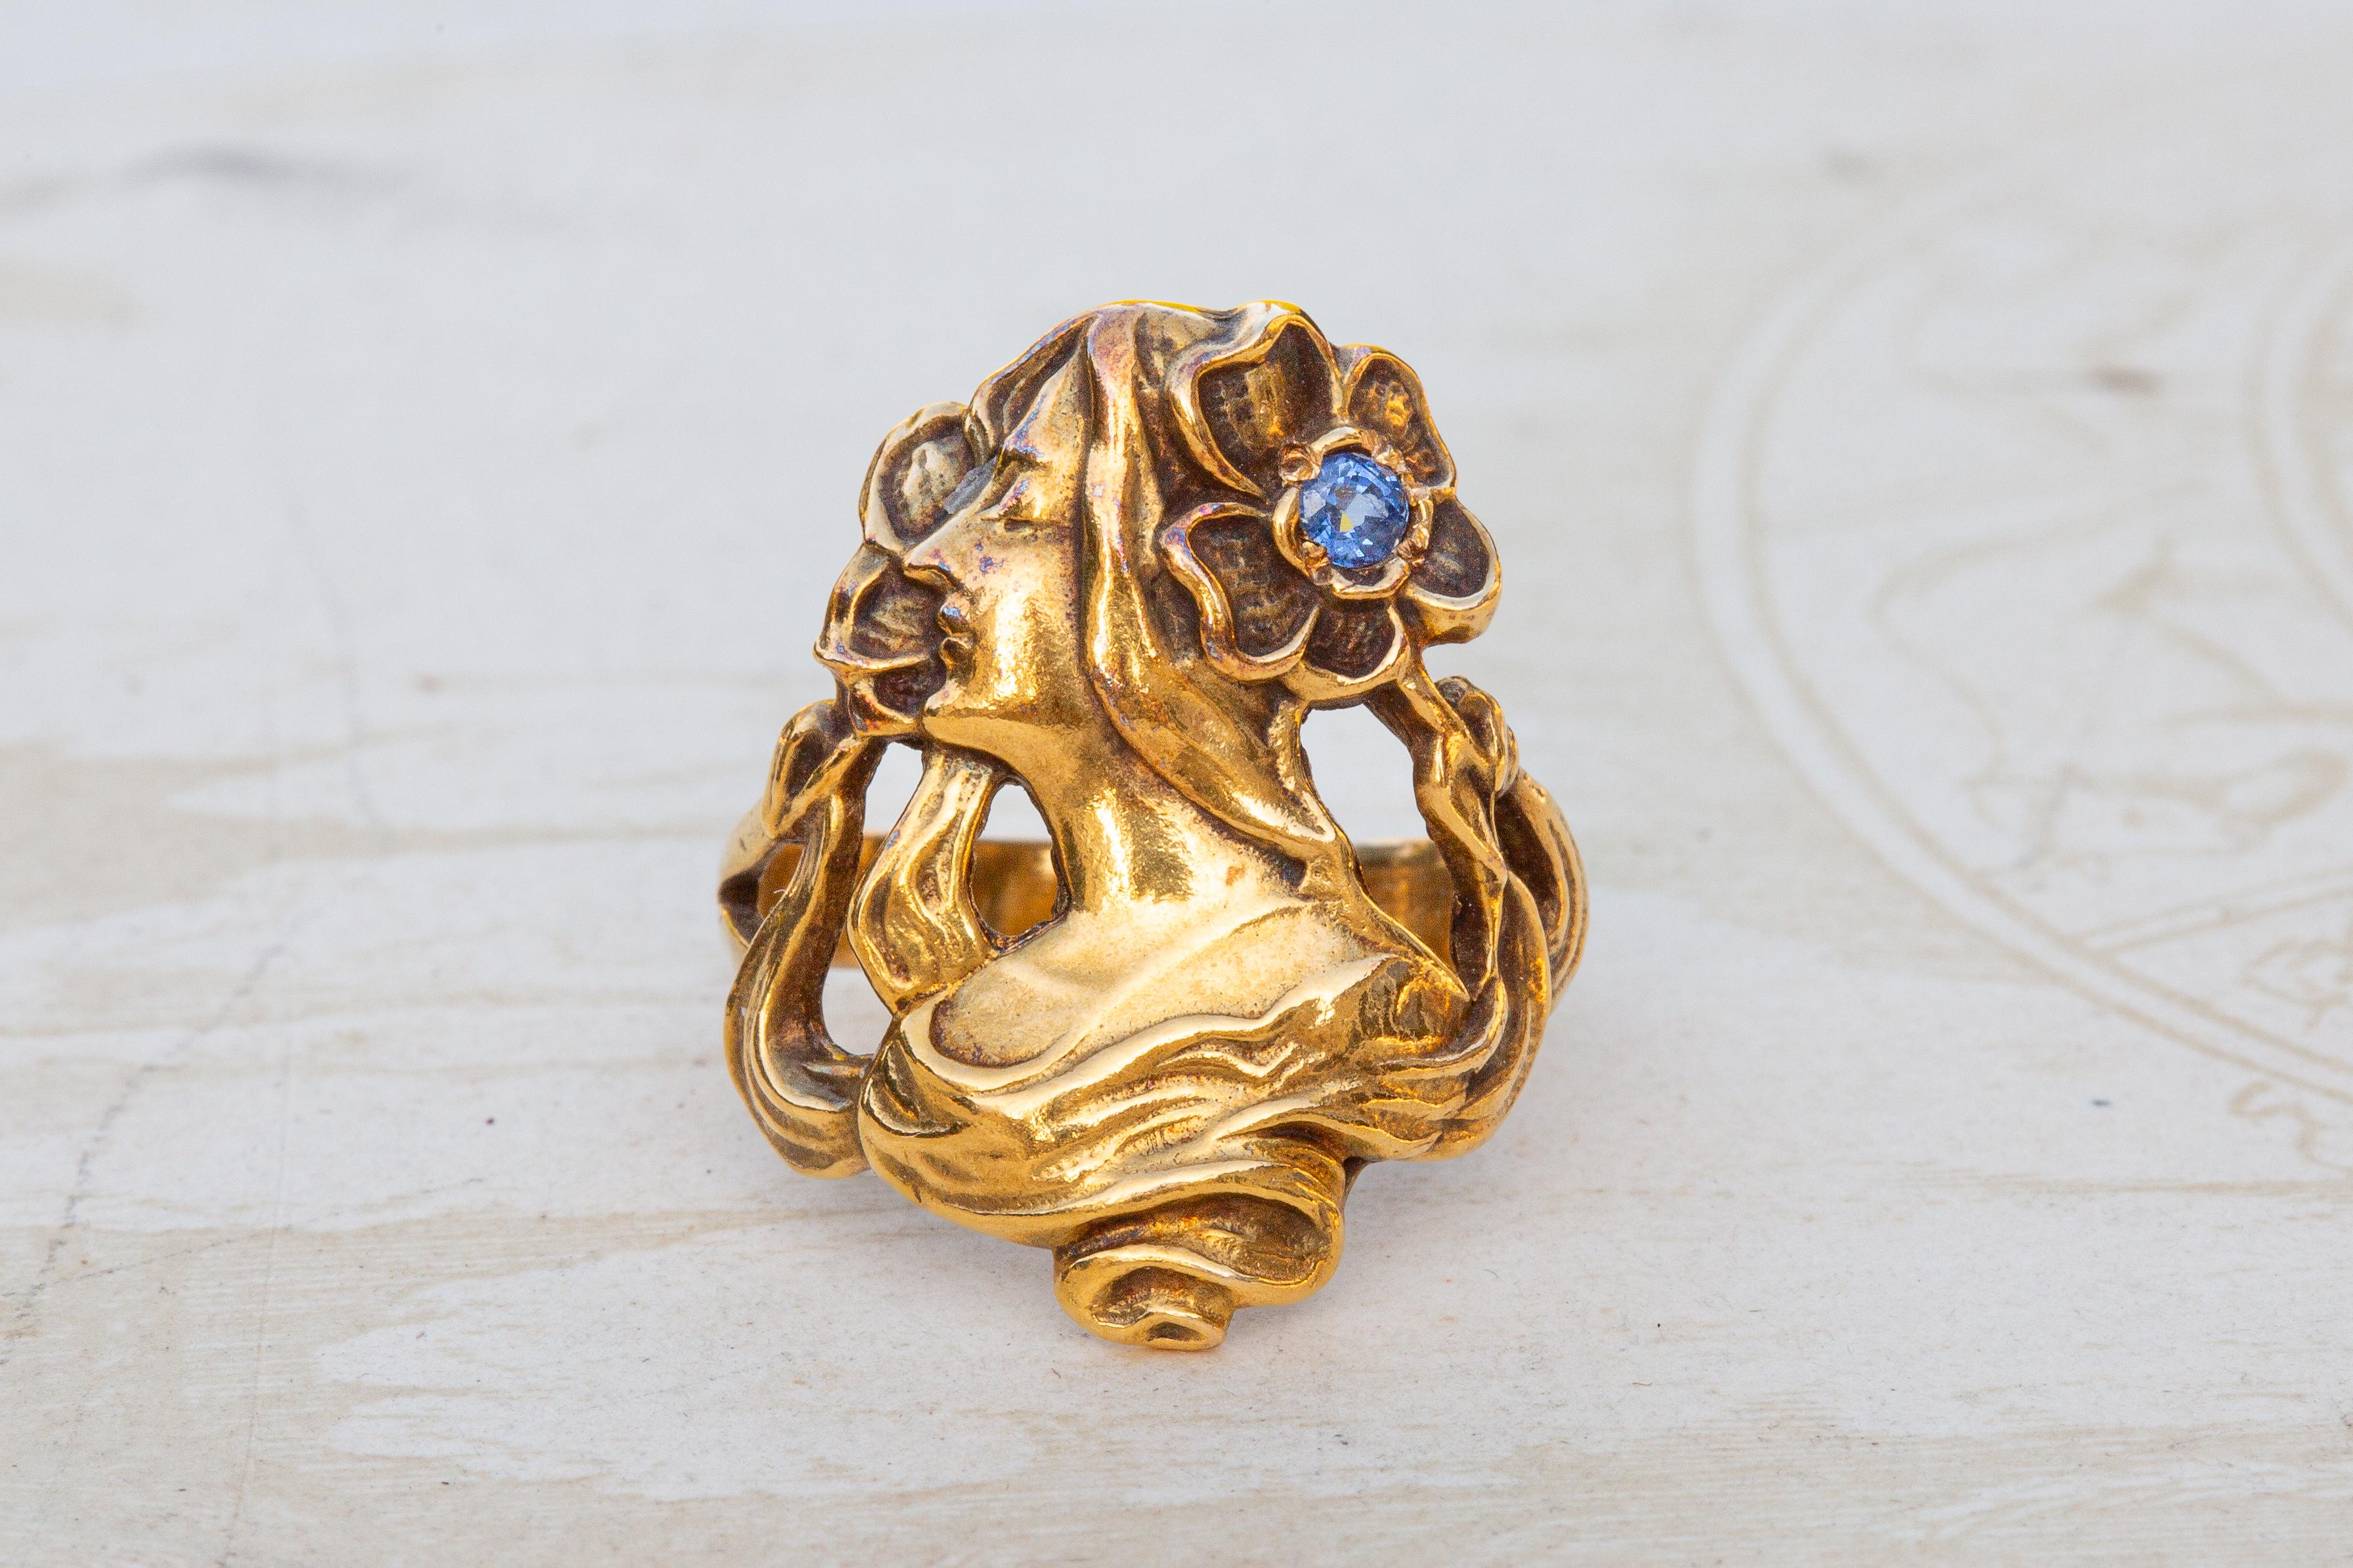 Dieser wunderschöne antike Jugendstil-Goldring wurde in den Niederlanden hergestellt und stammt aus der ersten Hälfte des 20. Jahrhunderts. Dieser figurale Statement-Ring ist ein ikonisches Beispiel des Jugendstils, das von Künstlern wie Alphonse